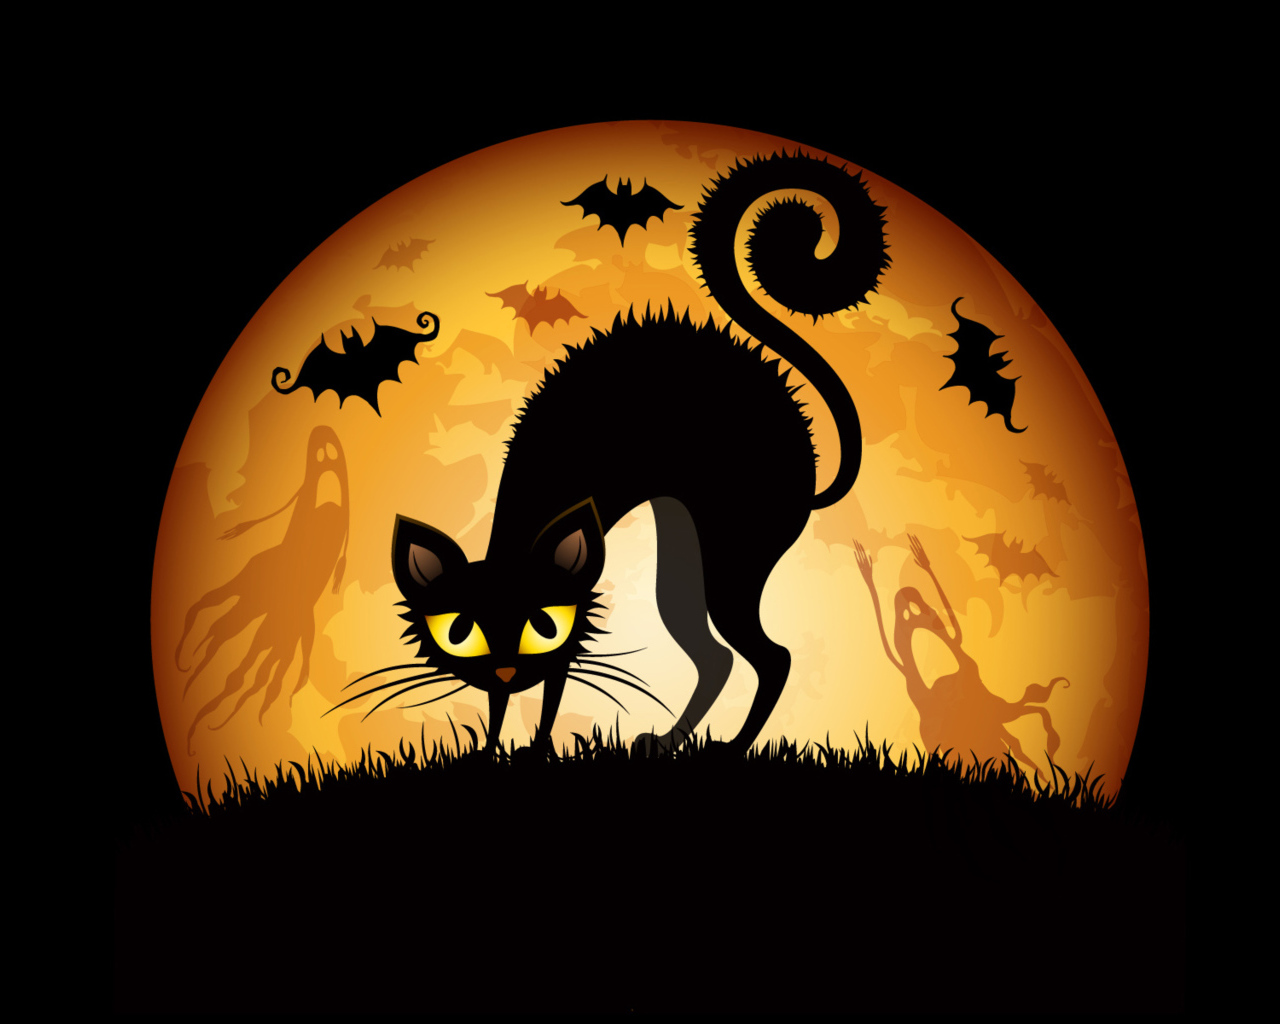 Черный кот на фоне большой желтой луны на Хэллоуин